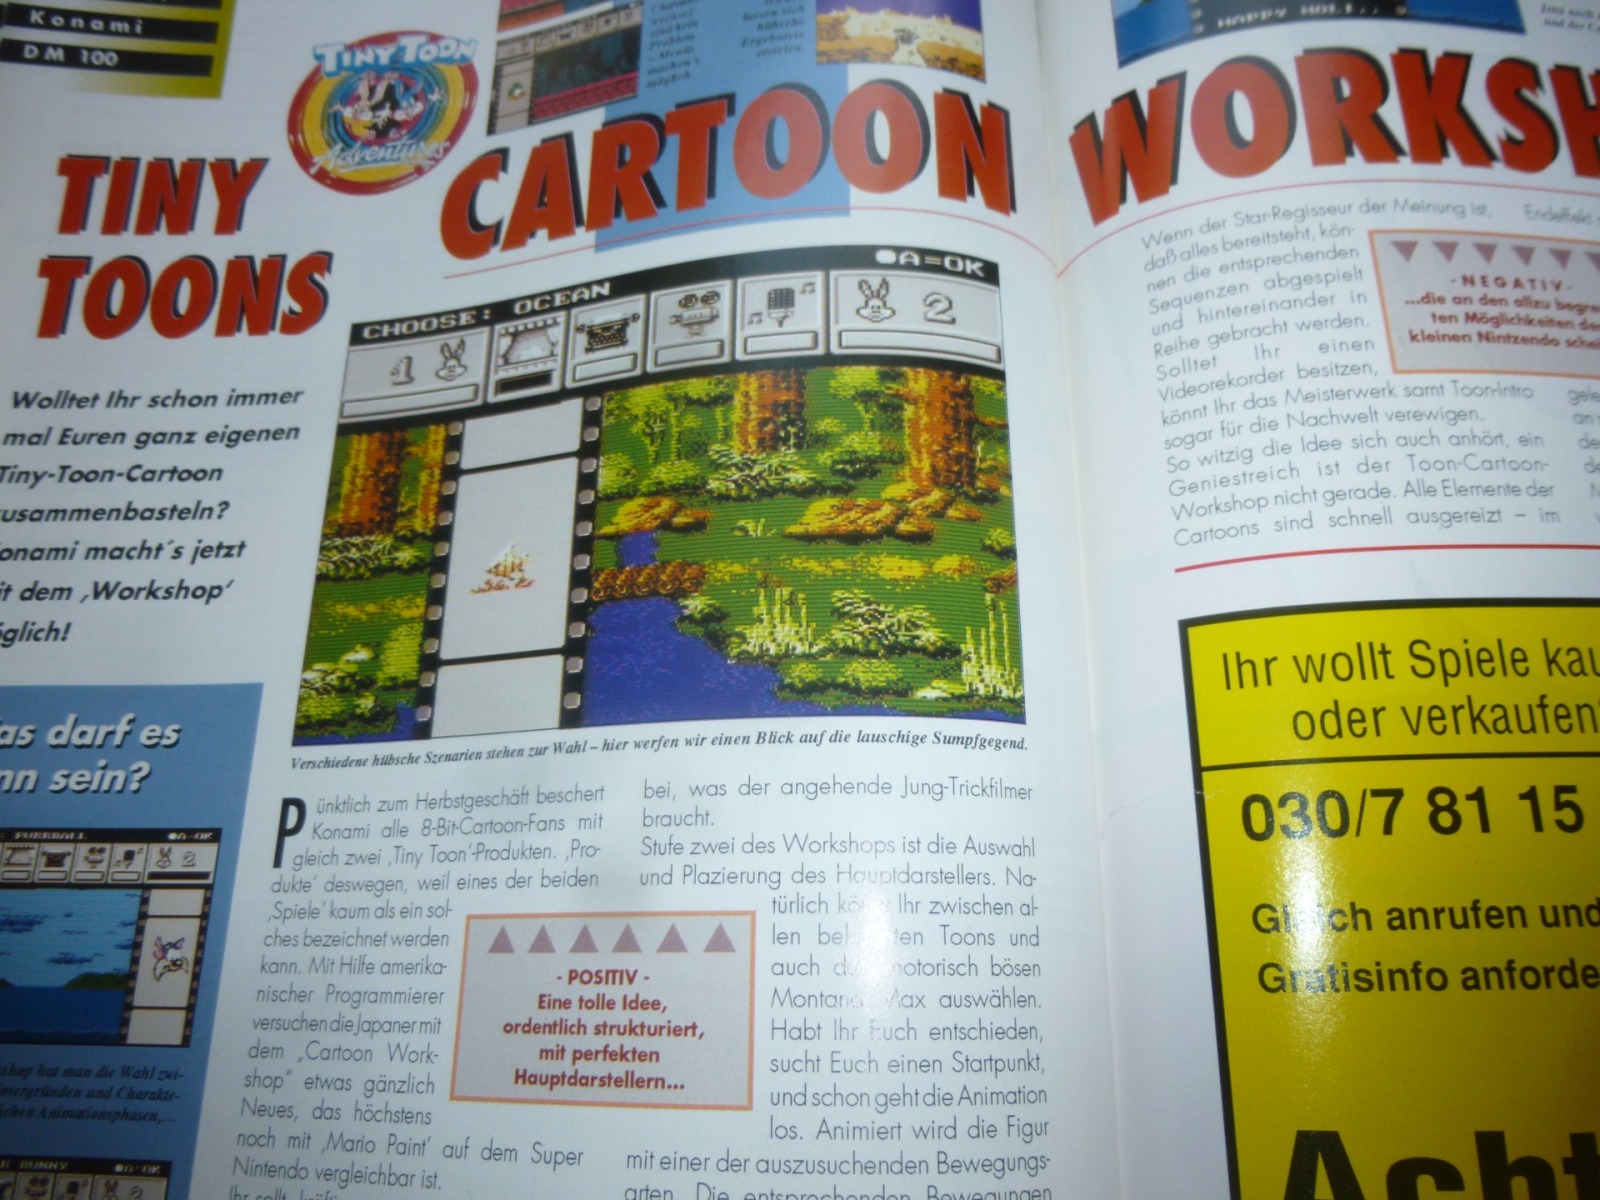 TOTAL Das unabhängige Magazin - 100% Nintendo - Ausgabe 9/93 1993 28